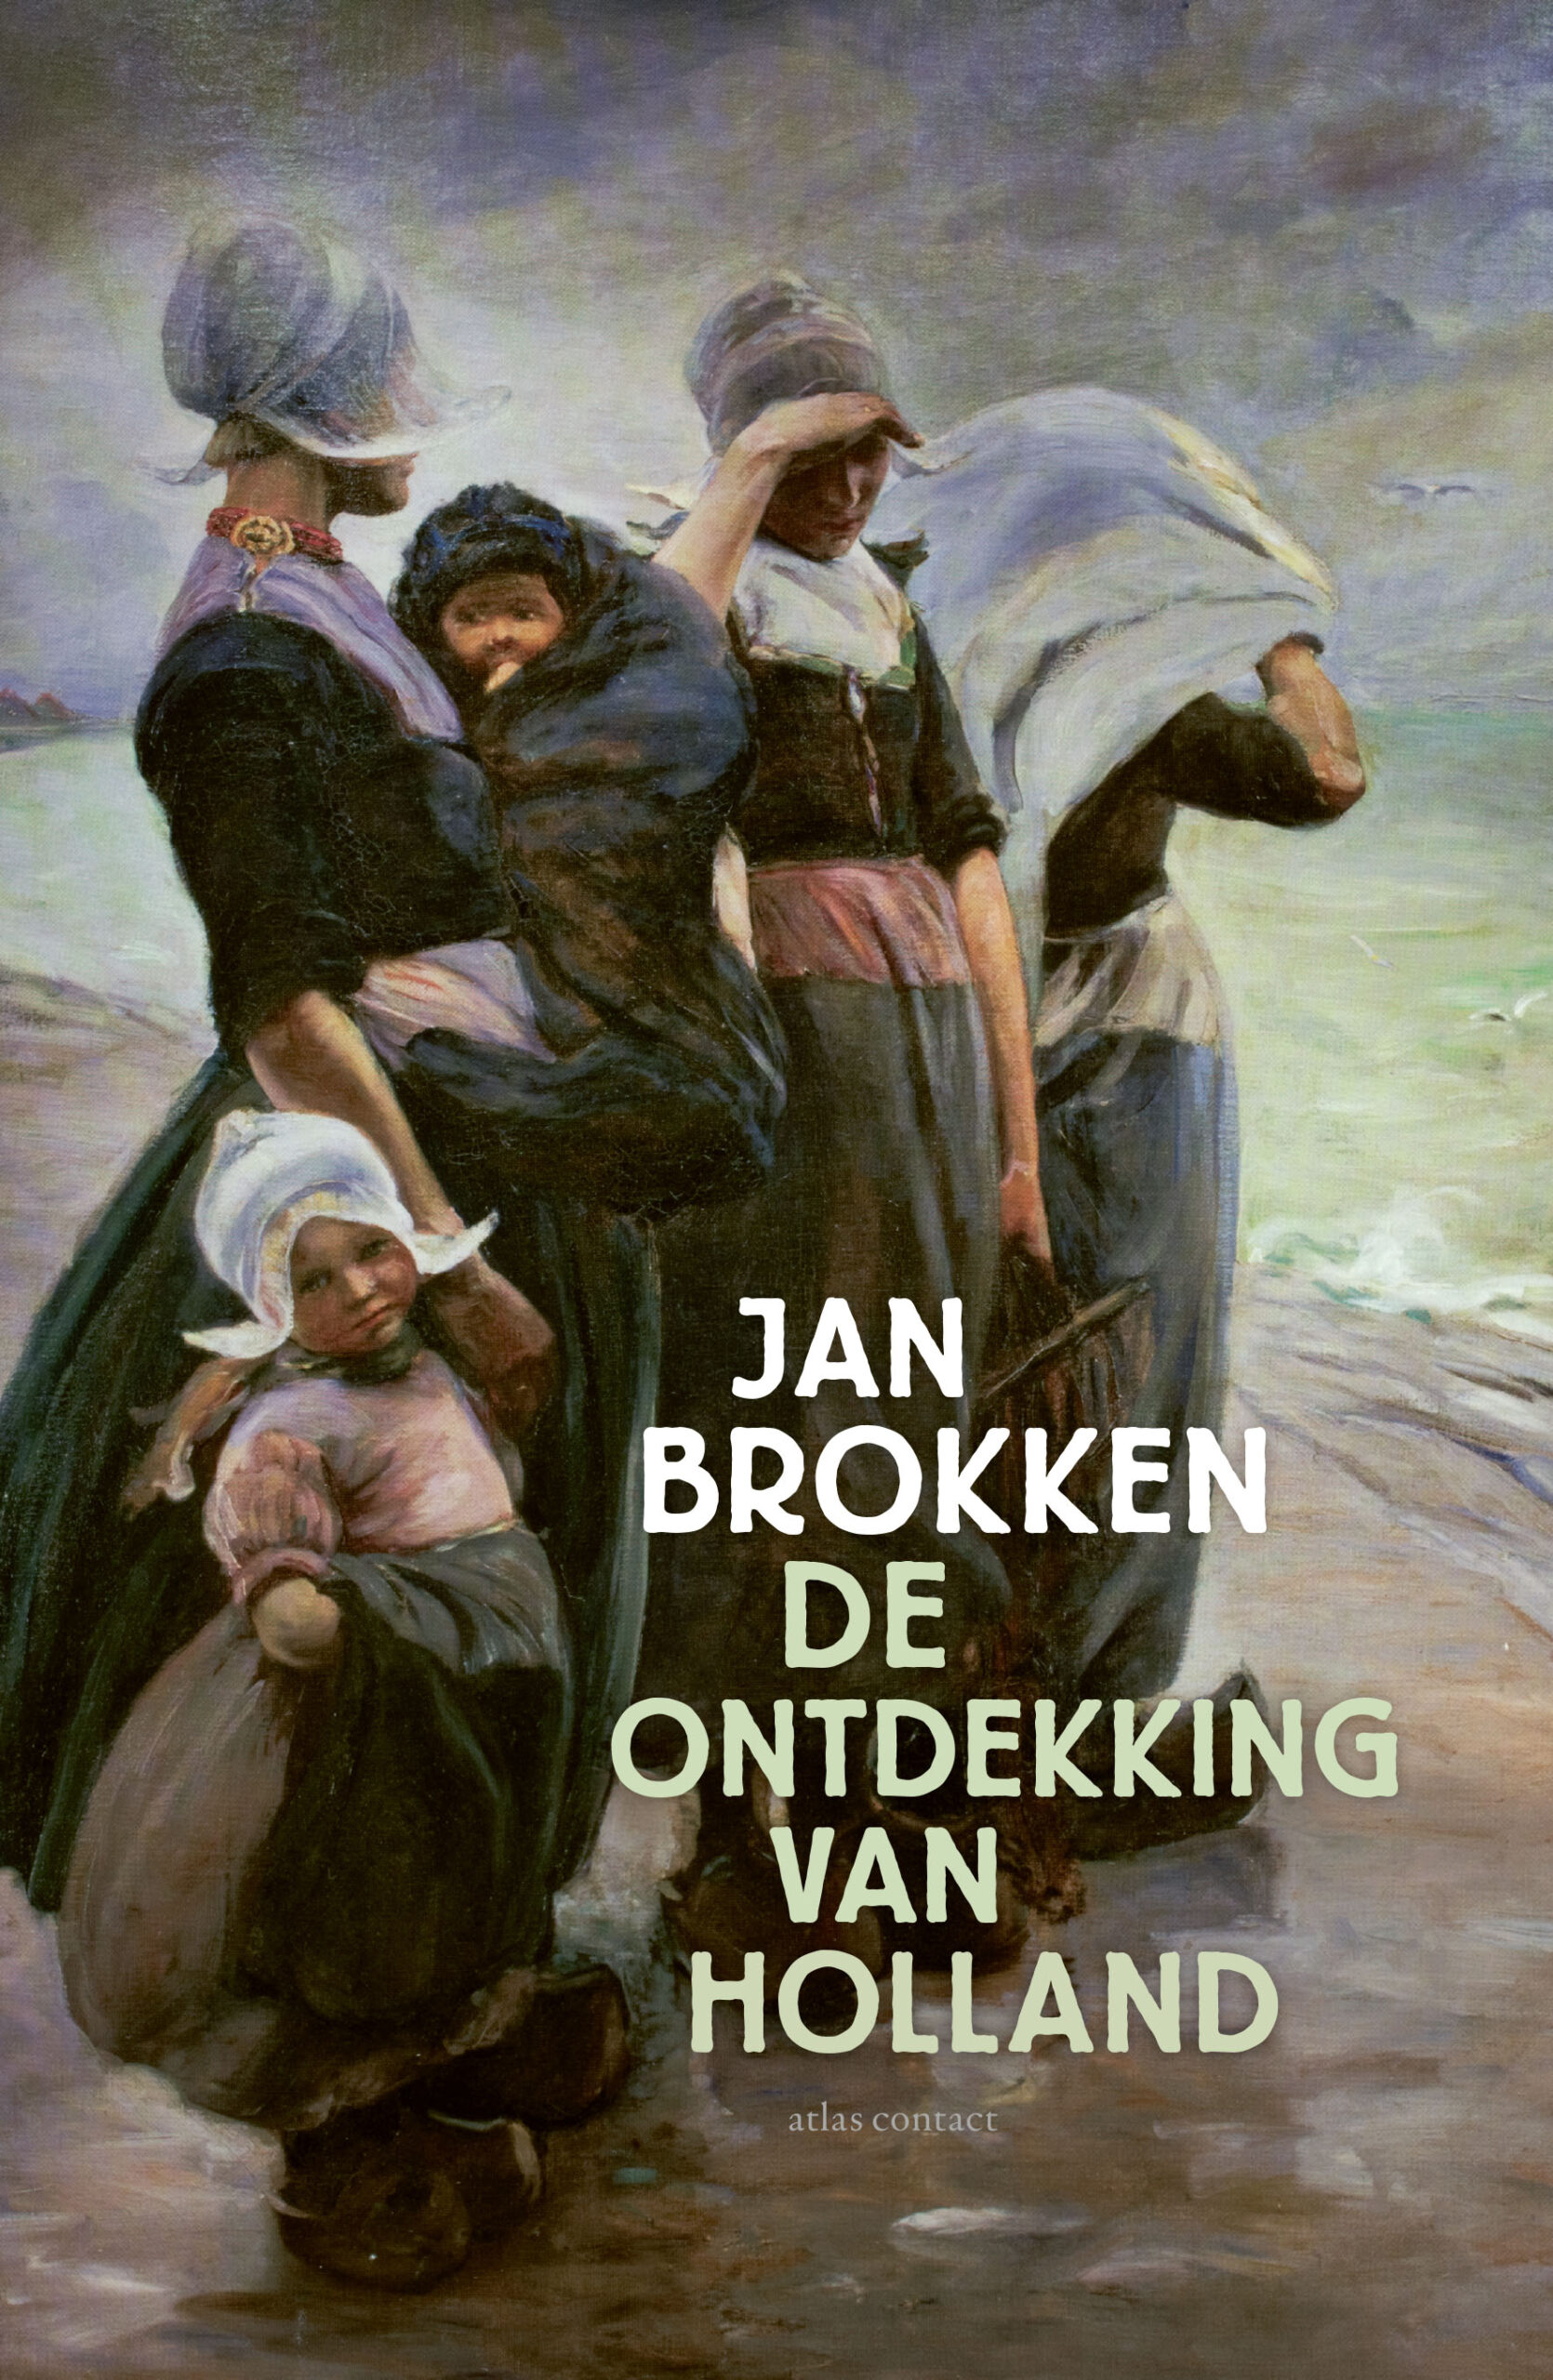 Jan Brokken over ‘De ontdekking van Holland’ in Leiden